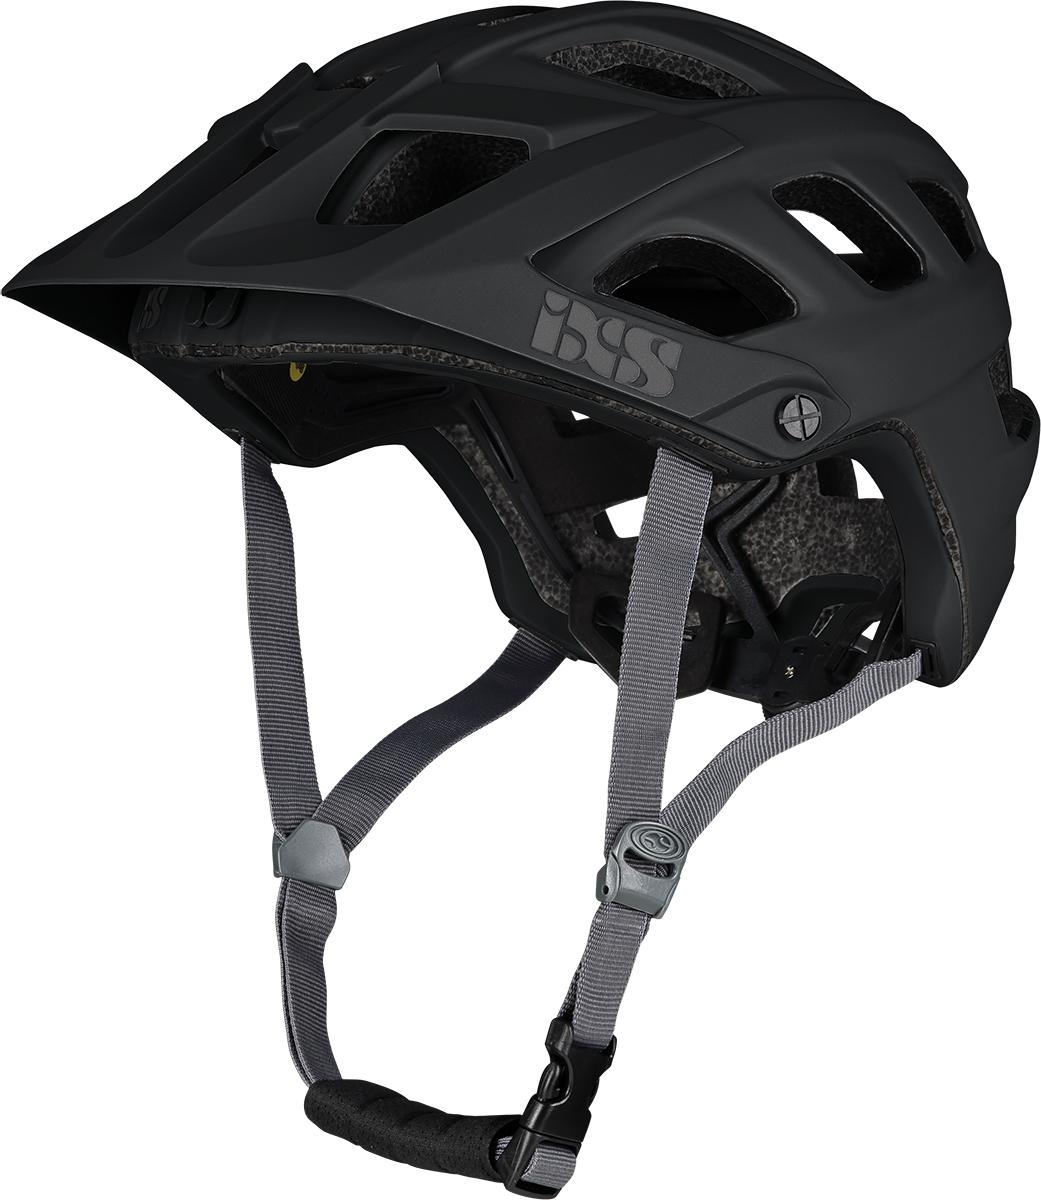 Ixs Trail Evo Mips Mtb Helmet - Black